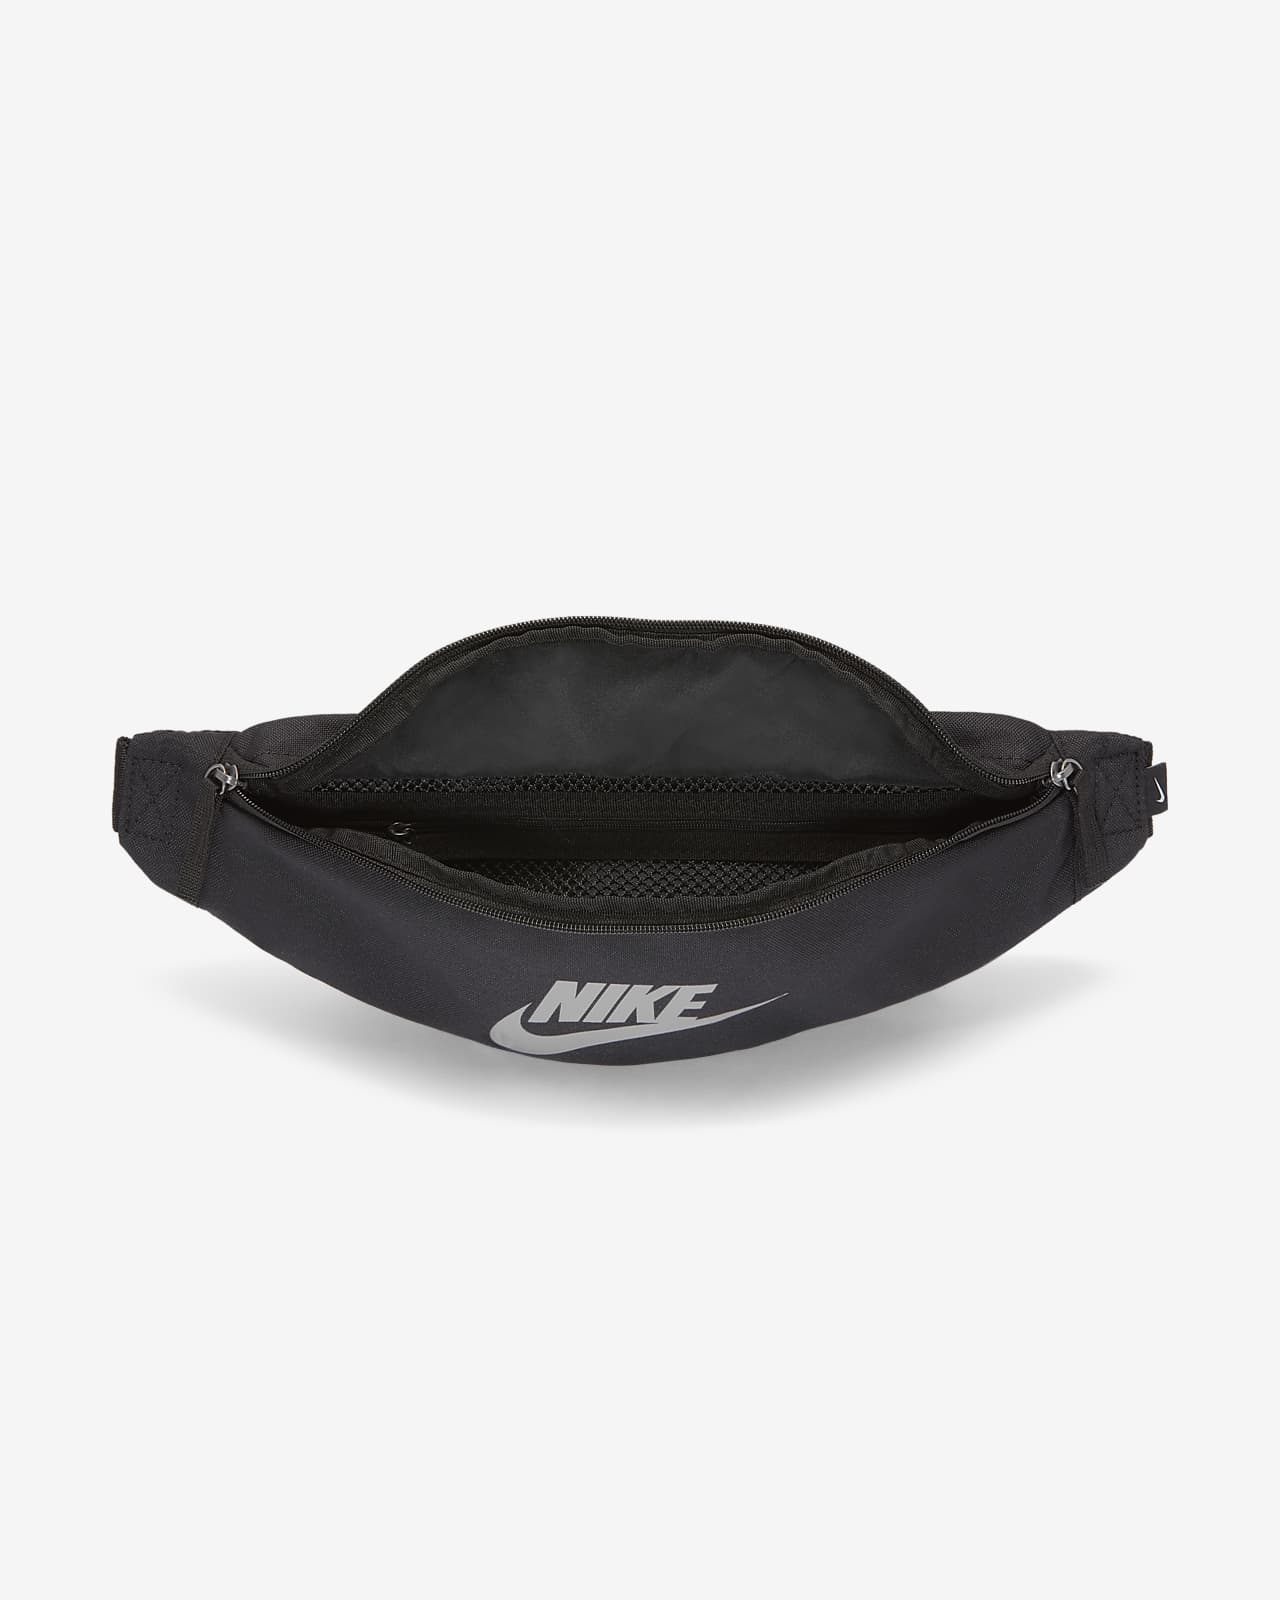 nike belt bag original price